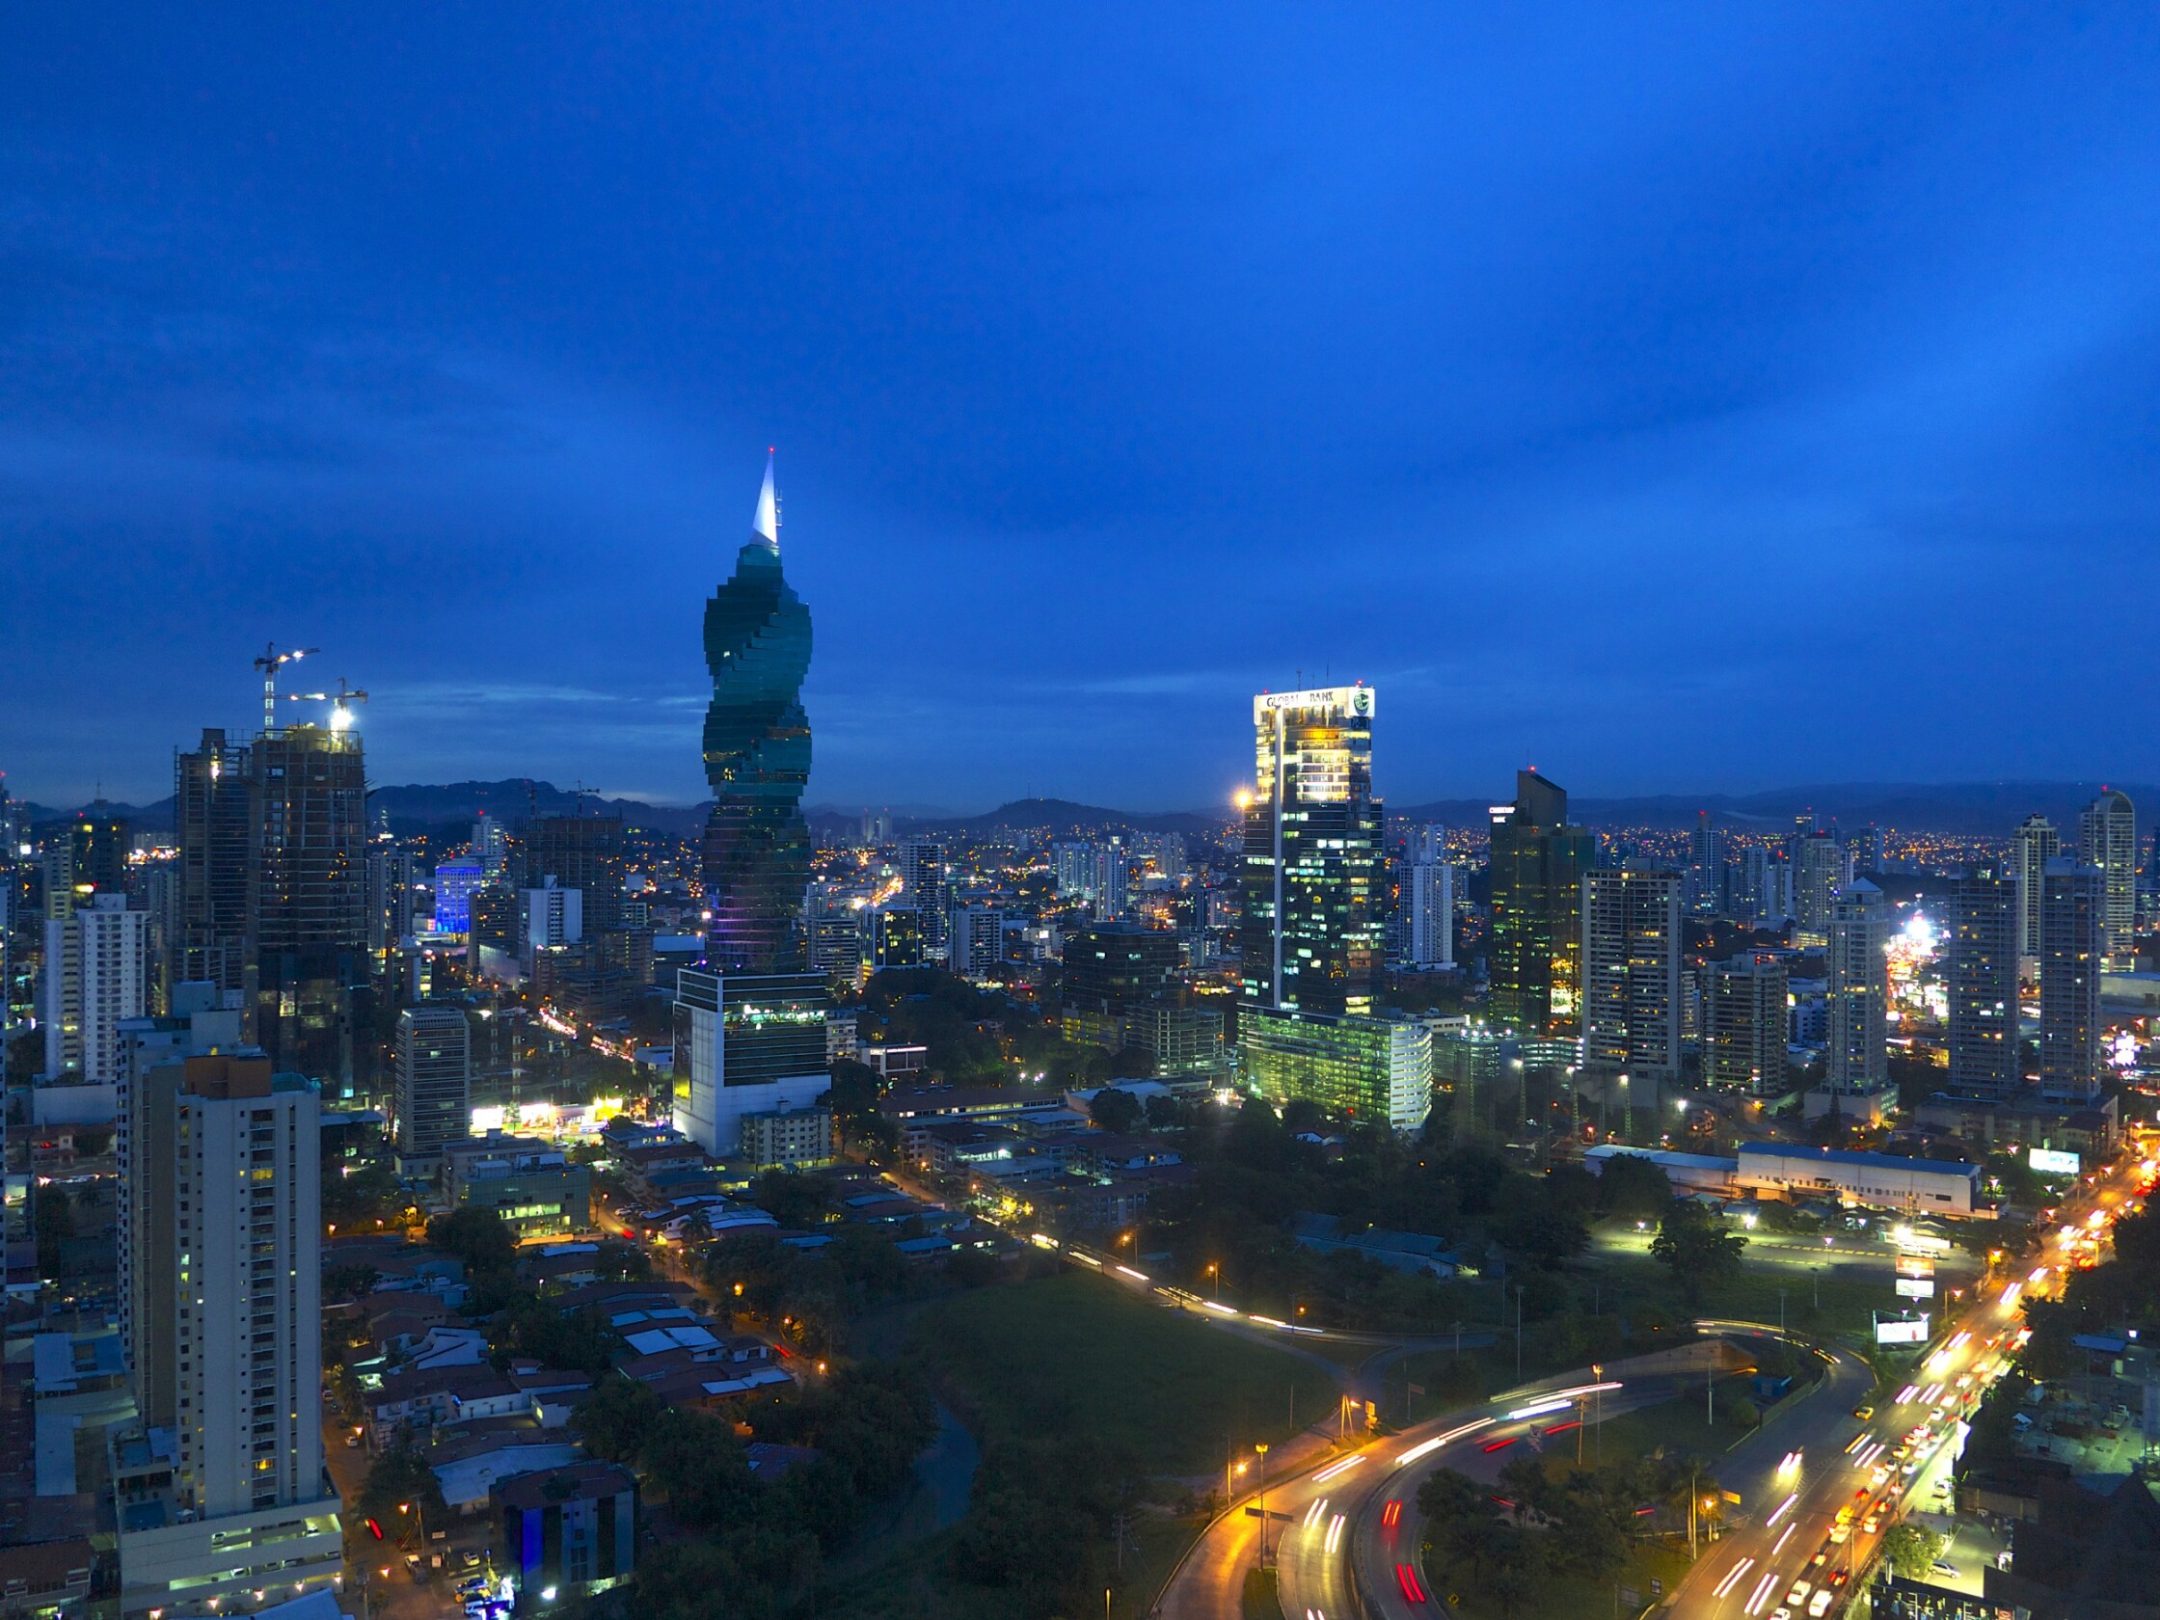 Panama-Stadt bei Nacht